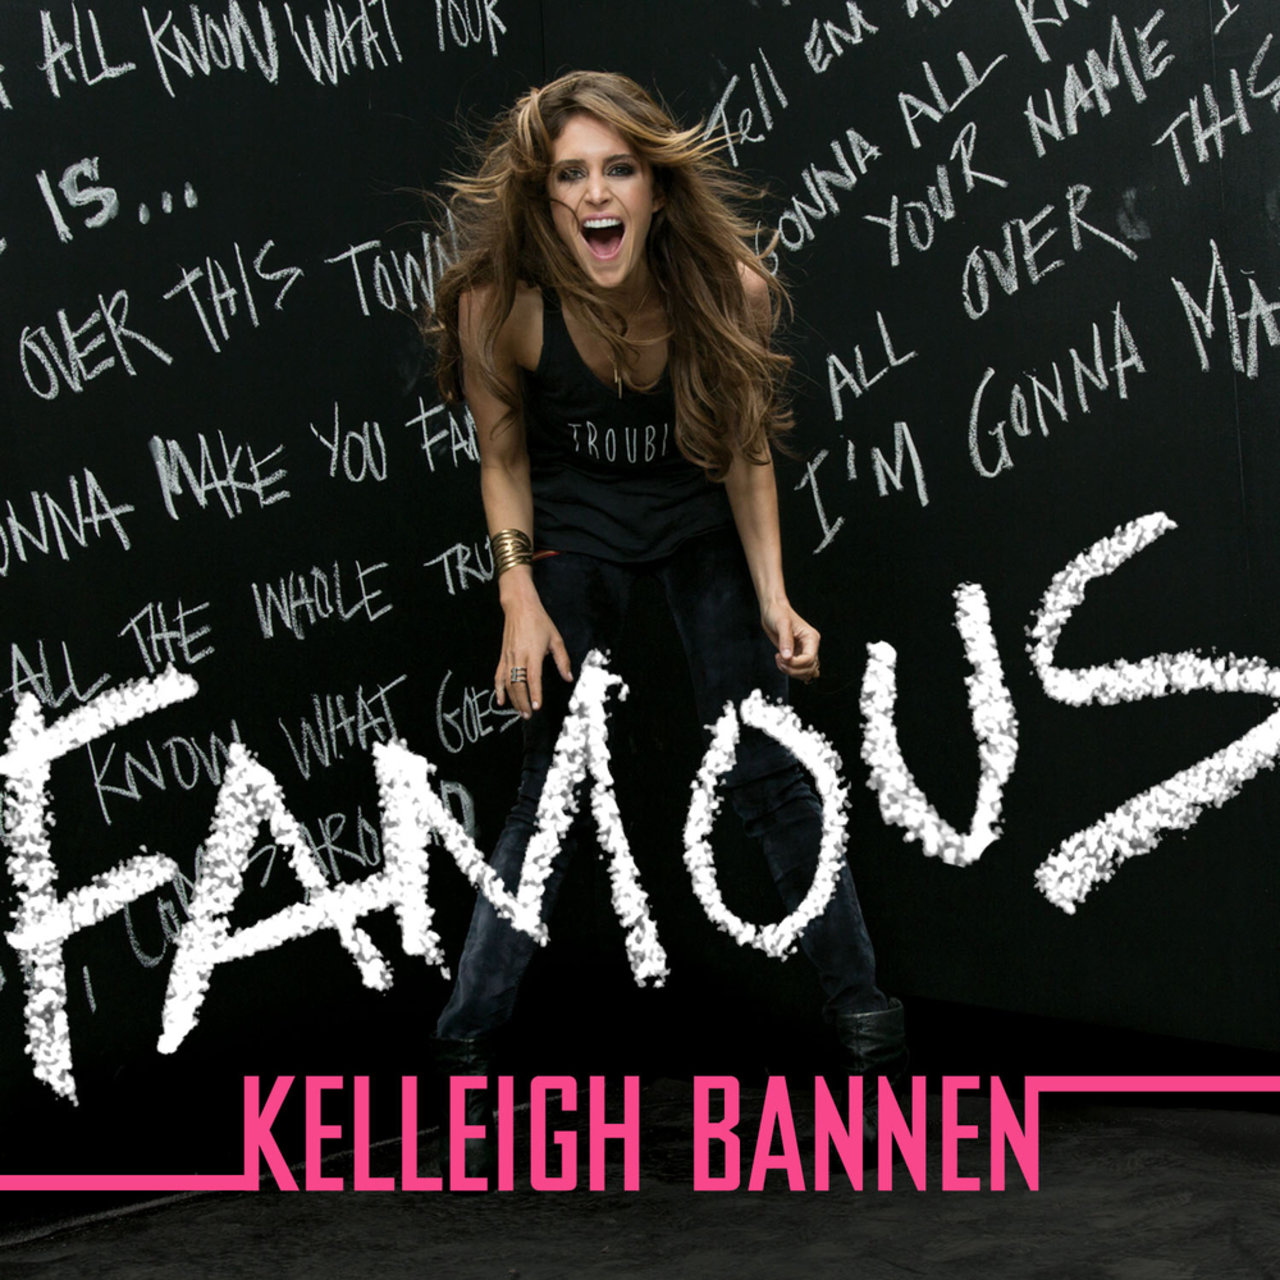 Kelleigh Bannen — Famous cover artwork